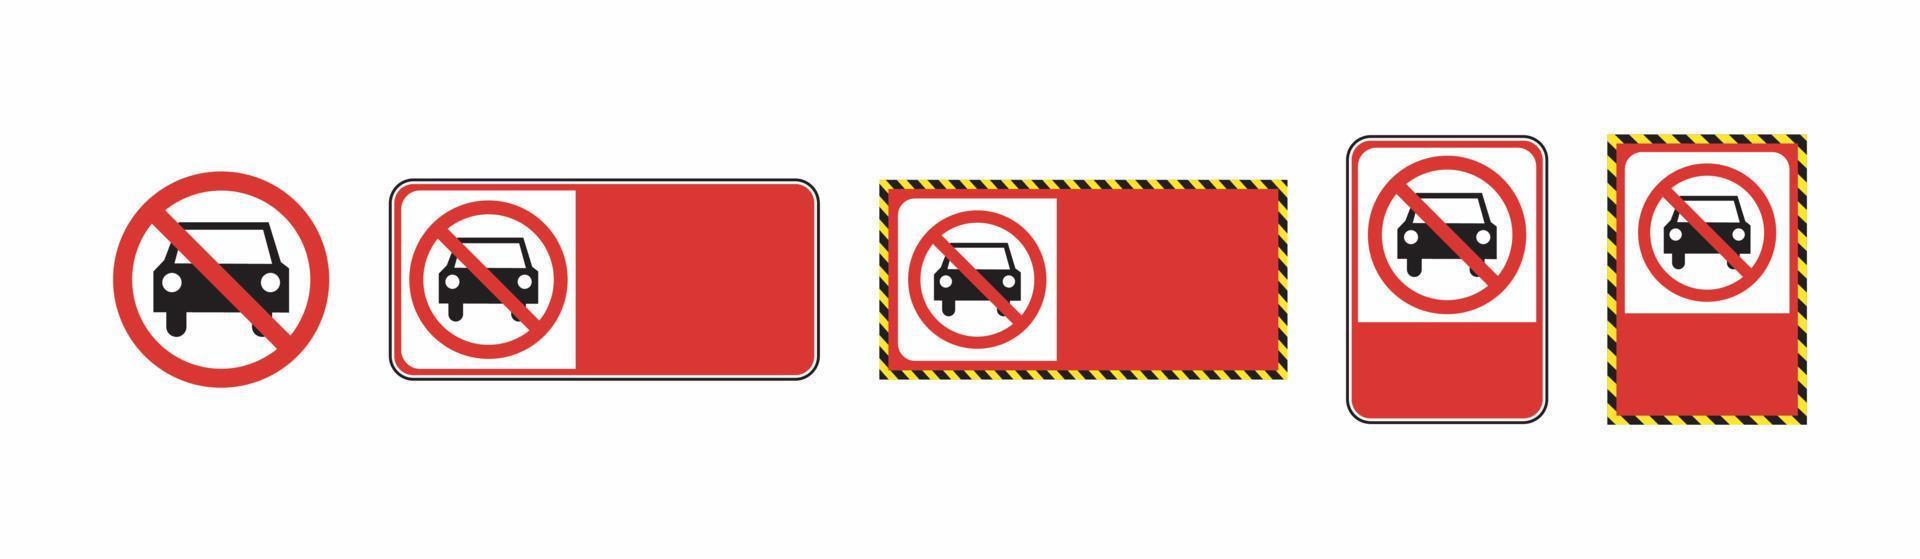 voiture interdiction signe interdit de qui passe vecteur